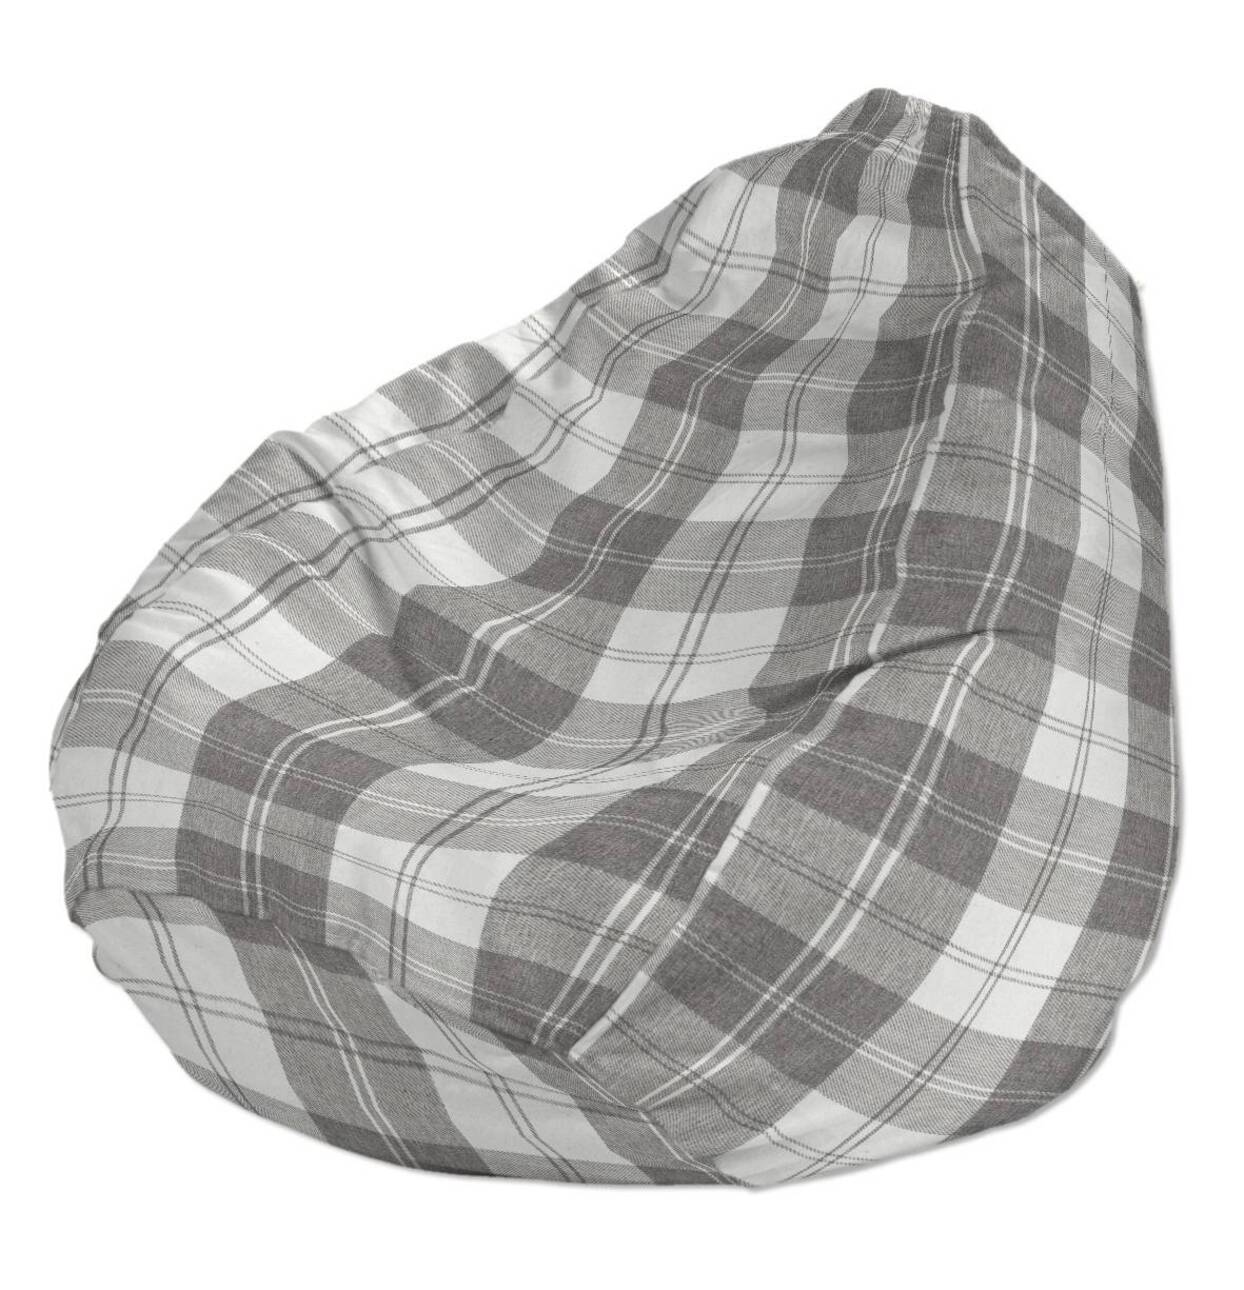 Bezug für Sitzsack, weiß-grau , Bezug für Sitzsack Ø50 x 85 cm, Edinburgh ( günstig online kaufen